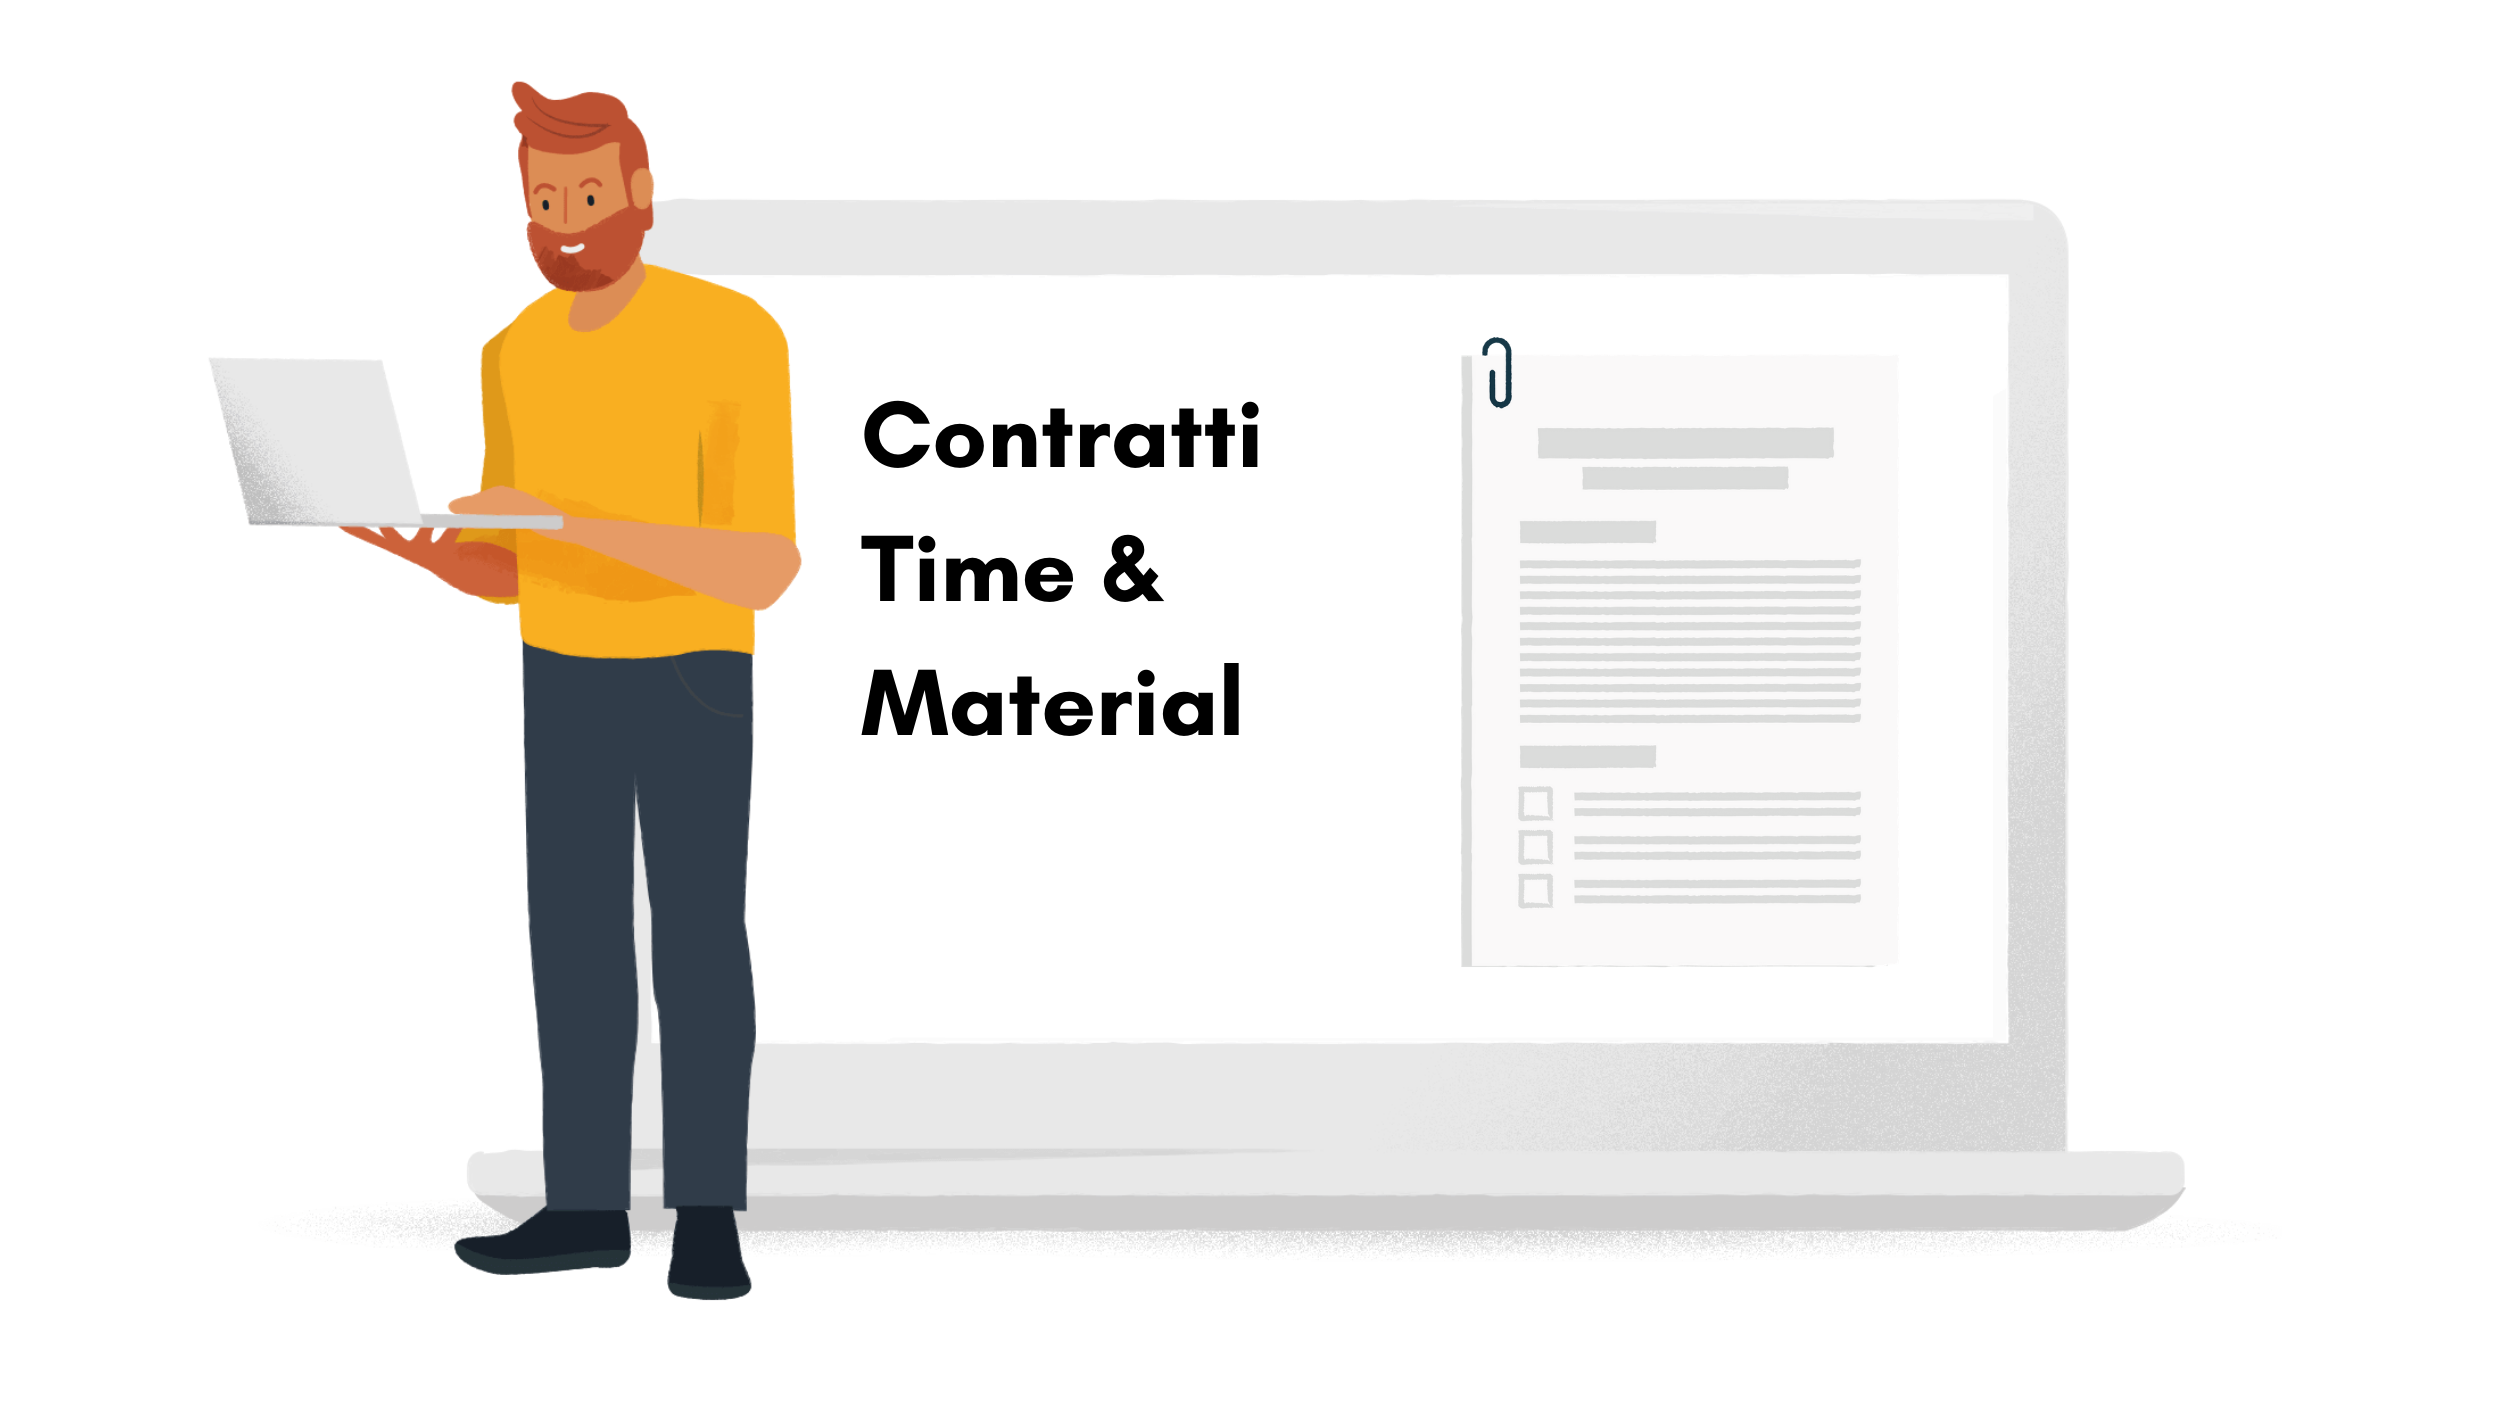 Contratti time & material